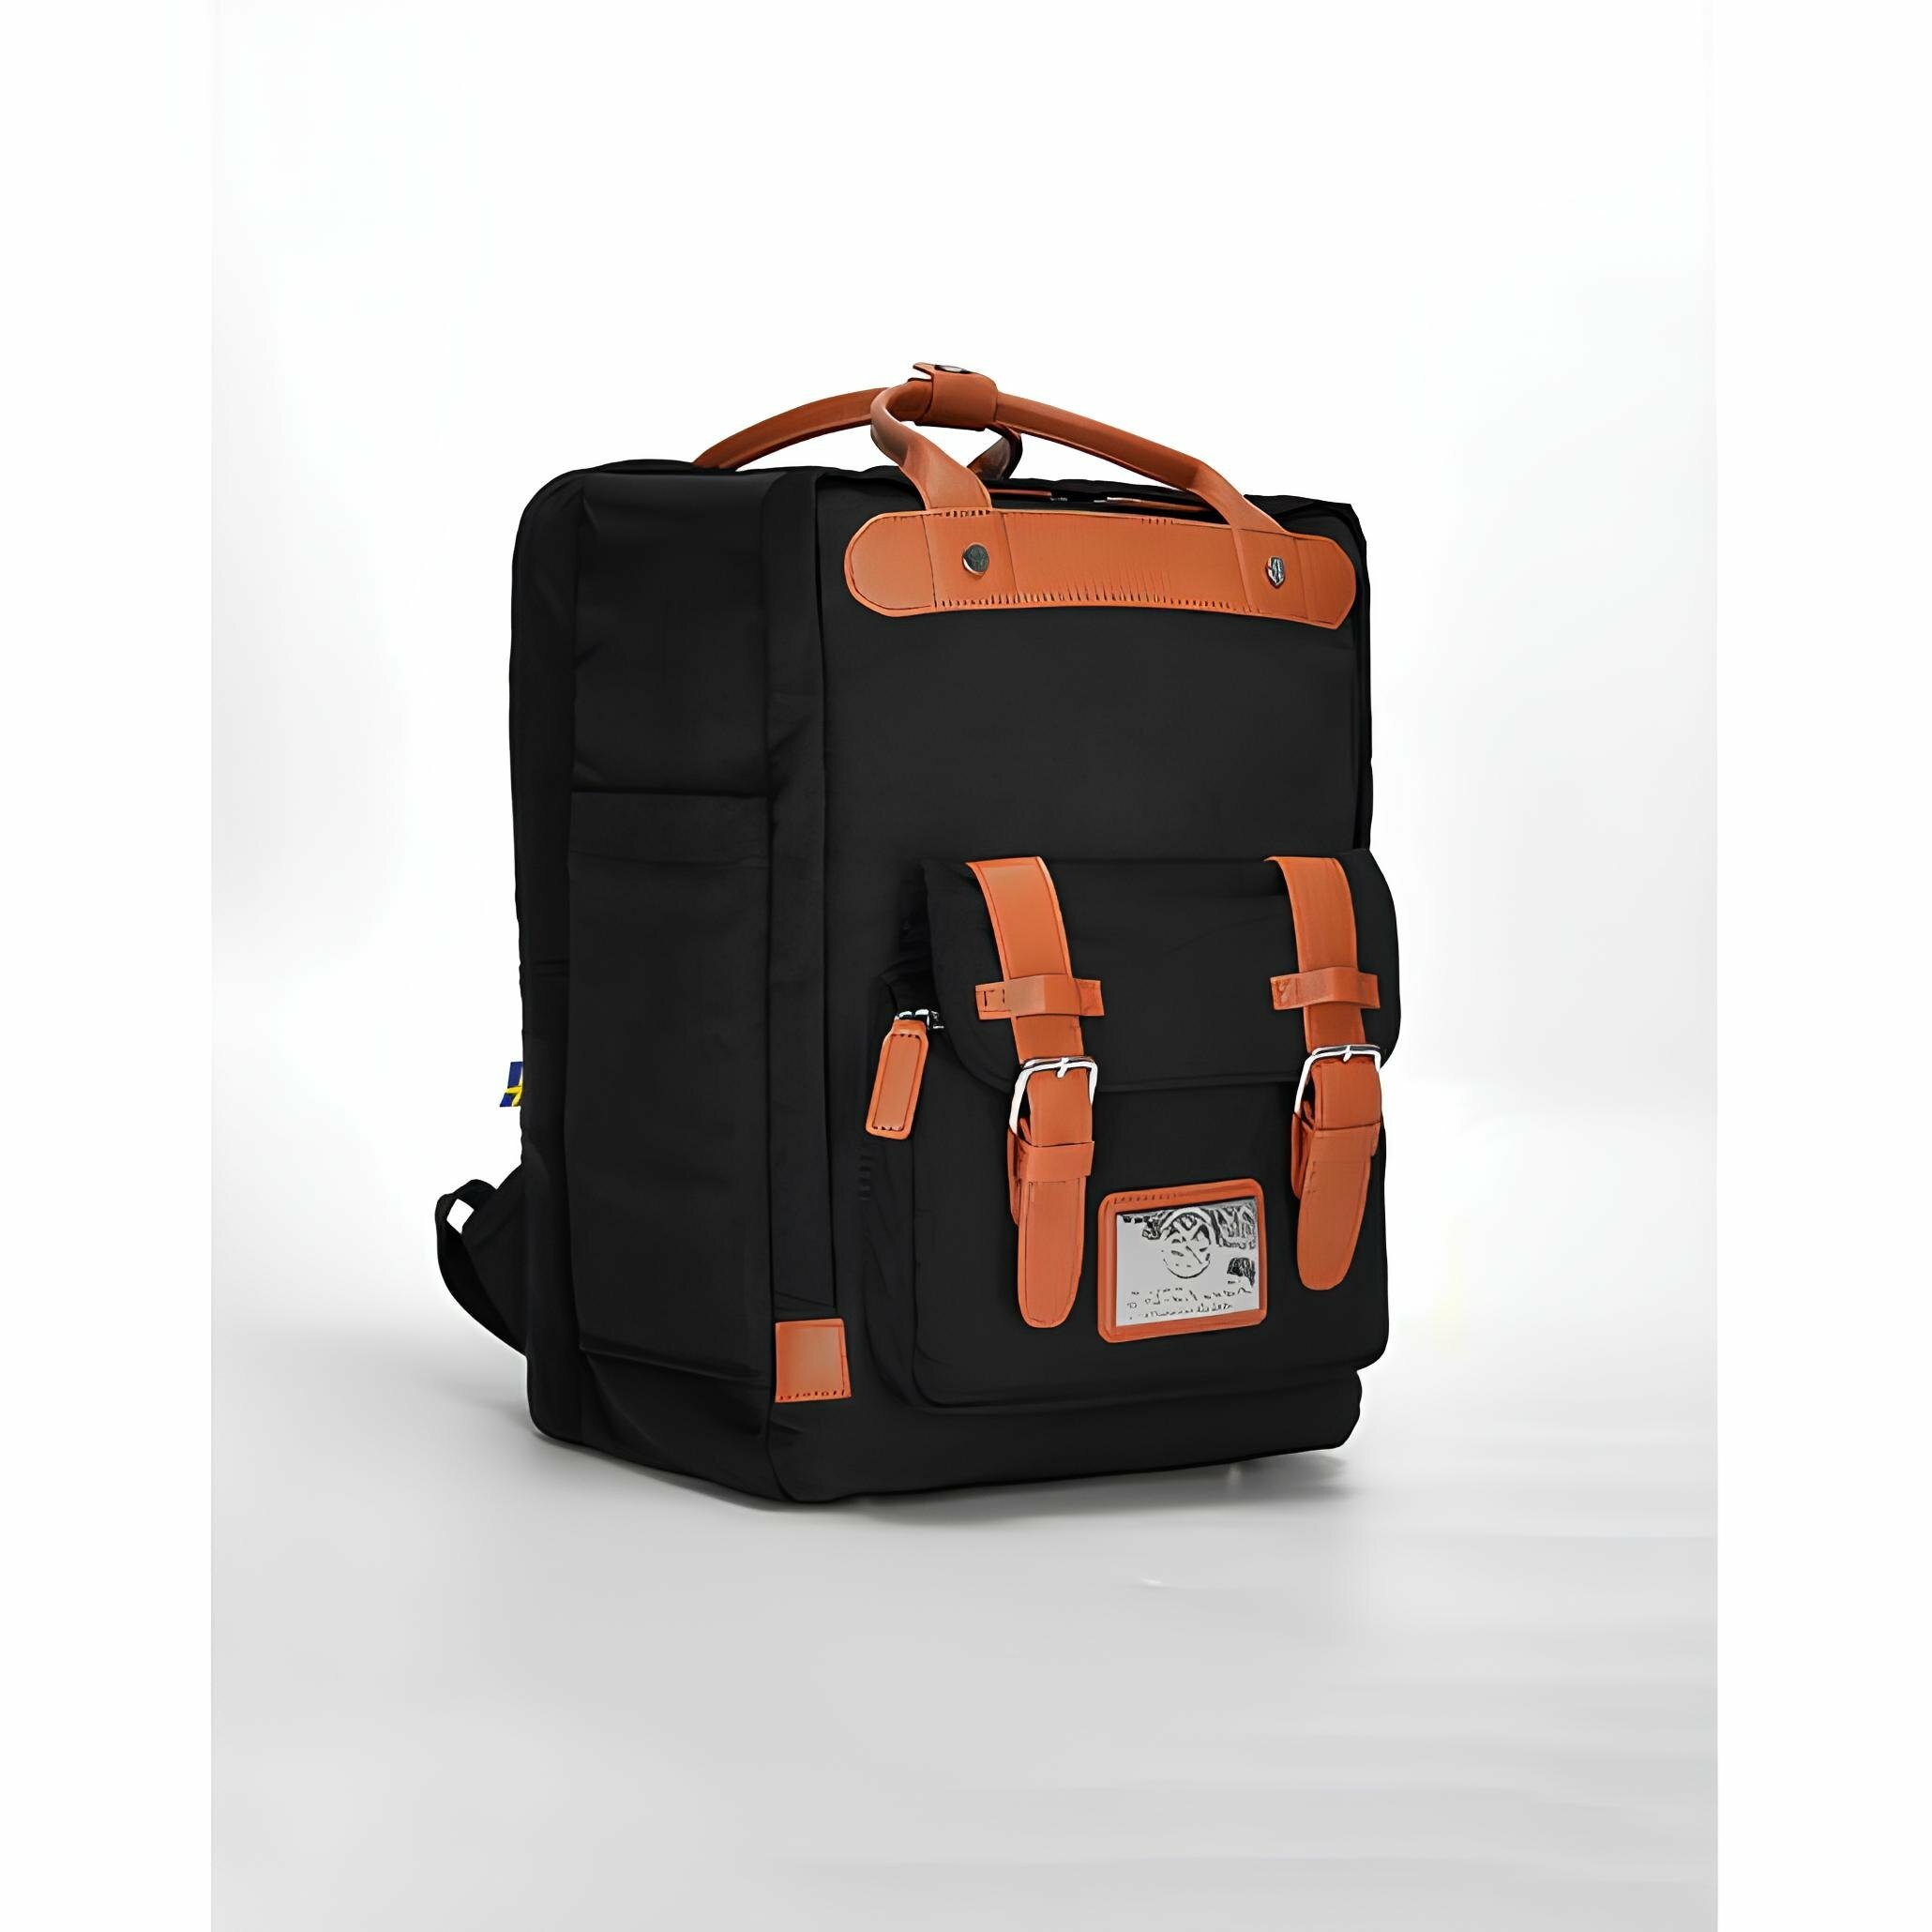 Рюкзак Универсальный 15" Gaston Luga GL3202 Backpack Biten 11'-15'. Цвет: черно-коричневый цвет: черный, коричневый